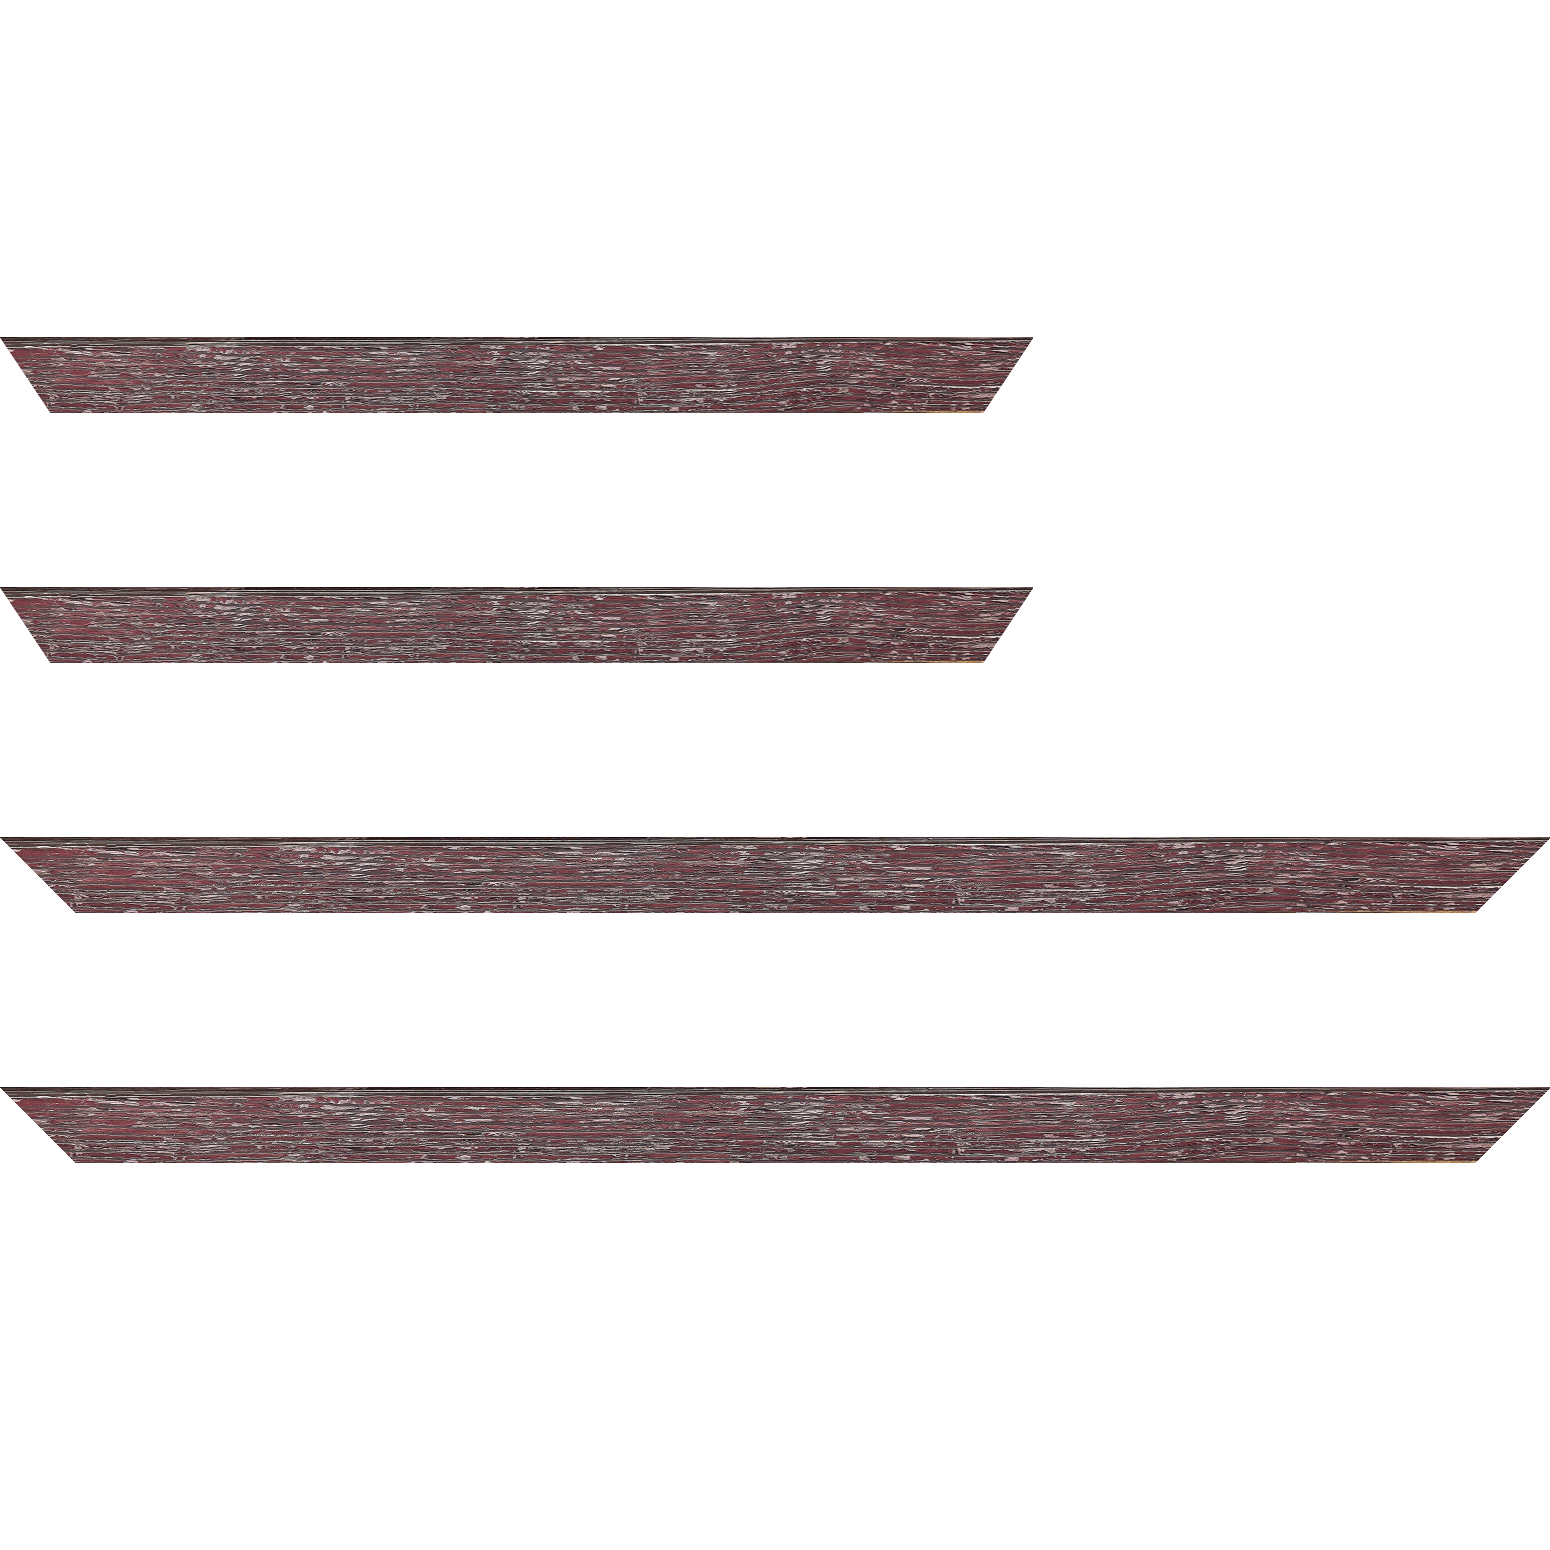 Baguette bois profil arrondi en pente plongeant largeur 2.4cm couleur framboise finition veinée, reflet argenté